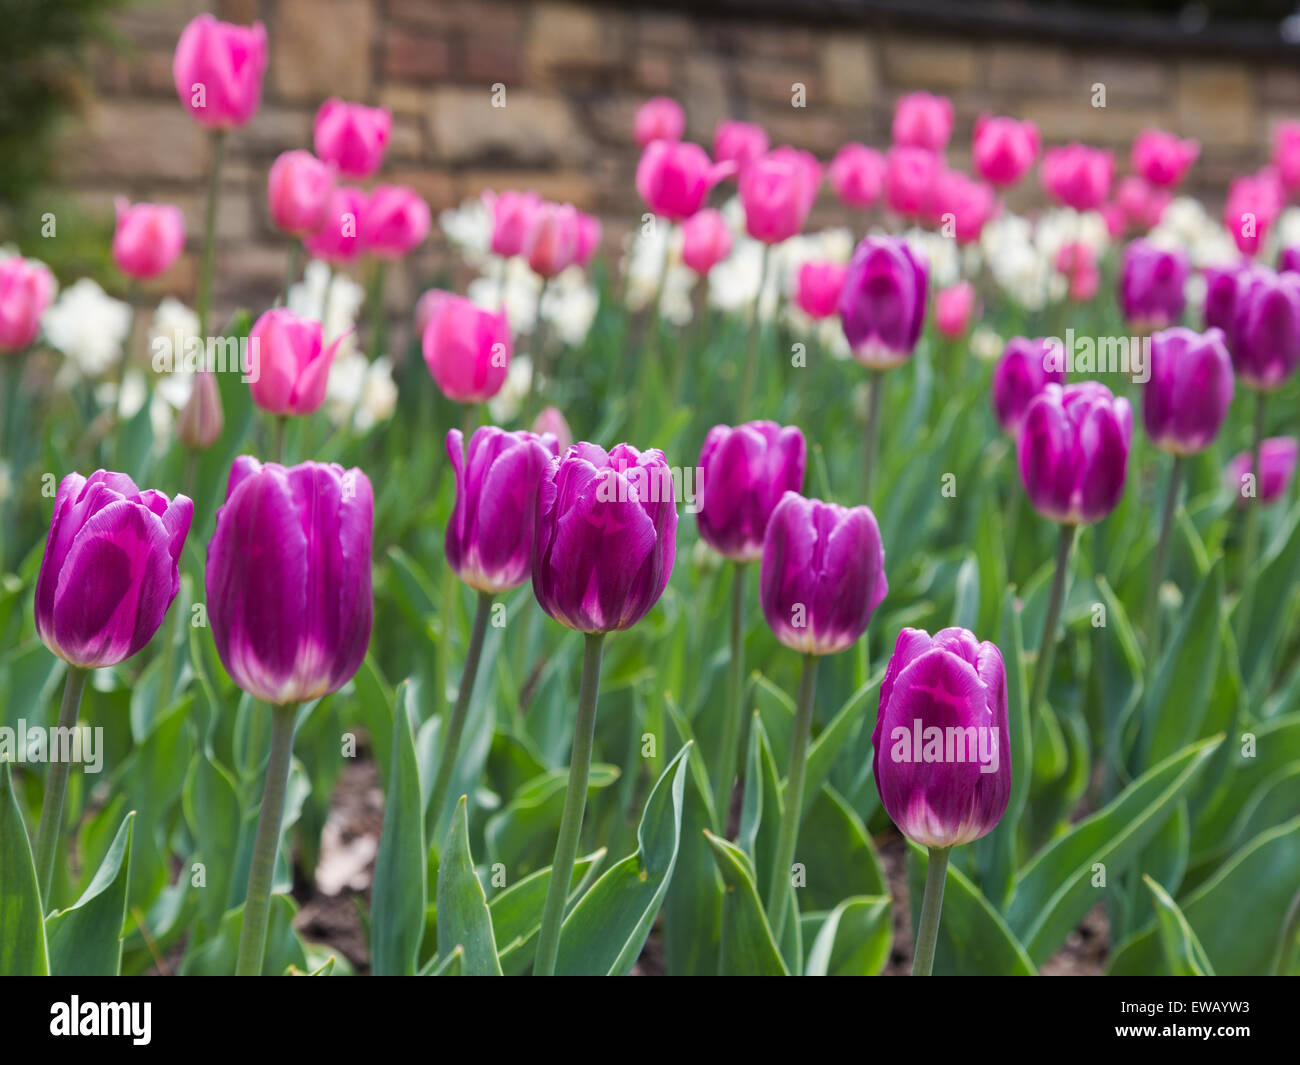 Gros plan d'une couleur pourpre Tulipes au printemps. Tulipe rose et blanc peut être vu derrière eux Banque D'Images